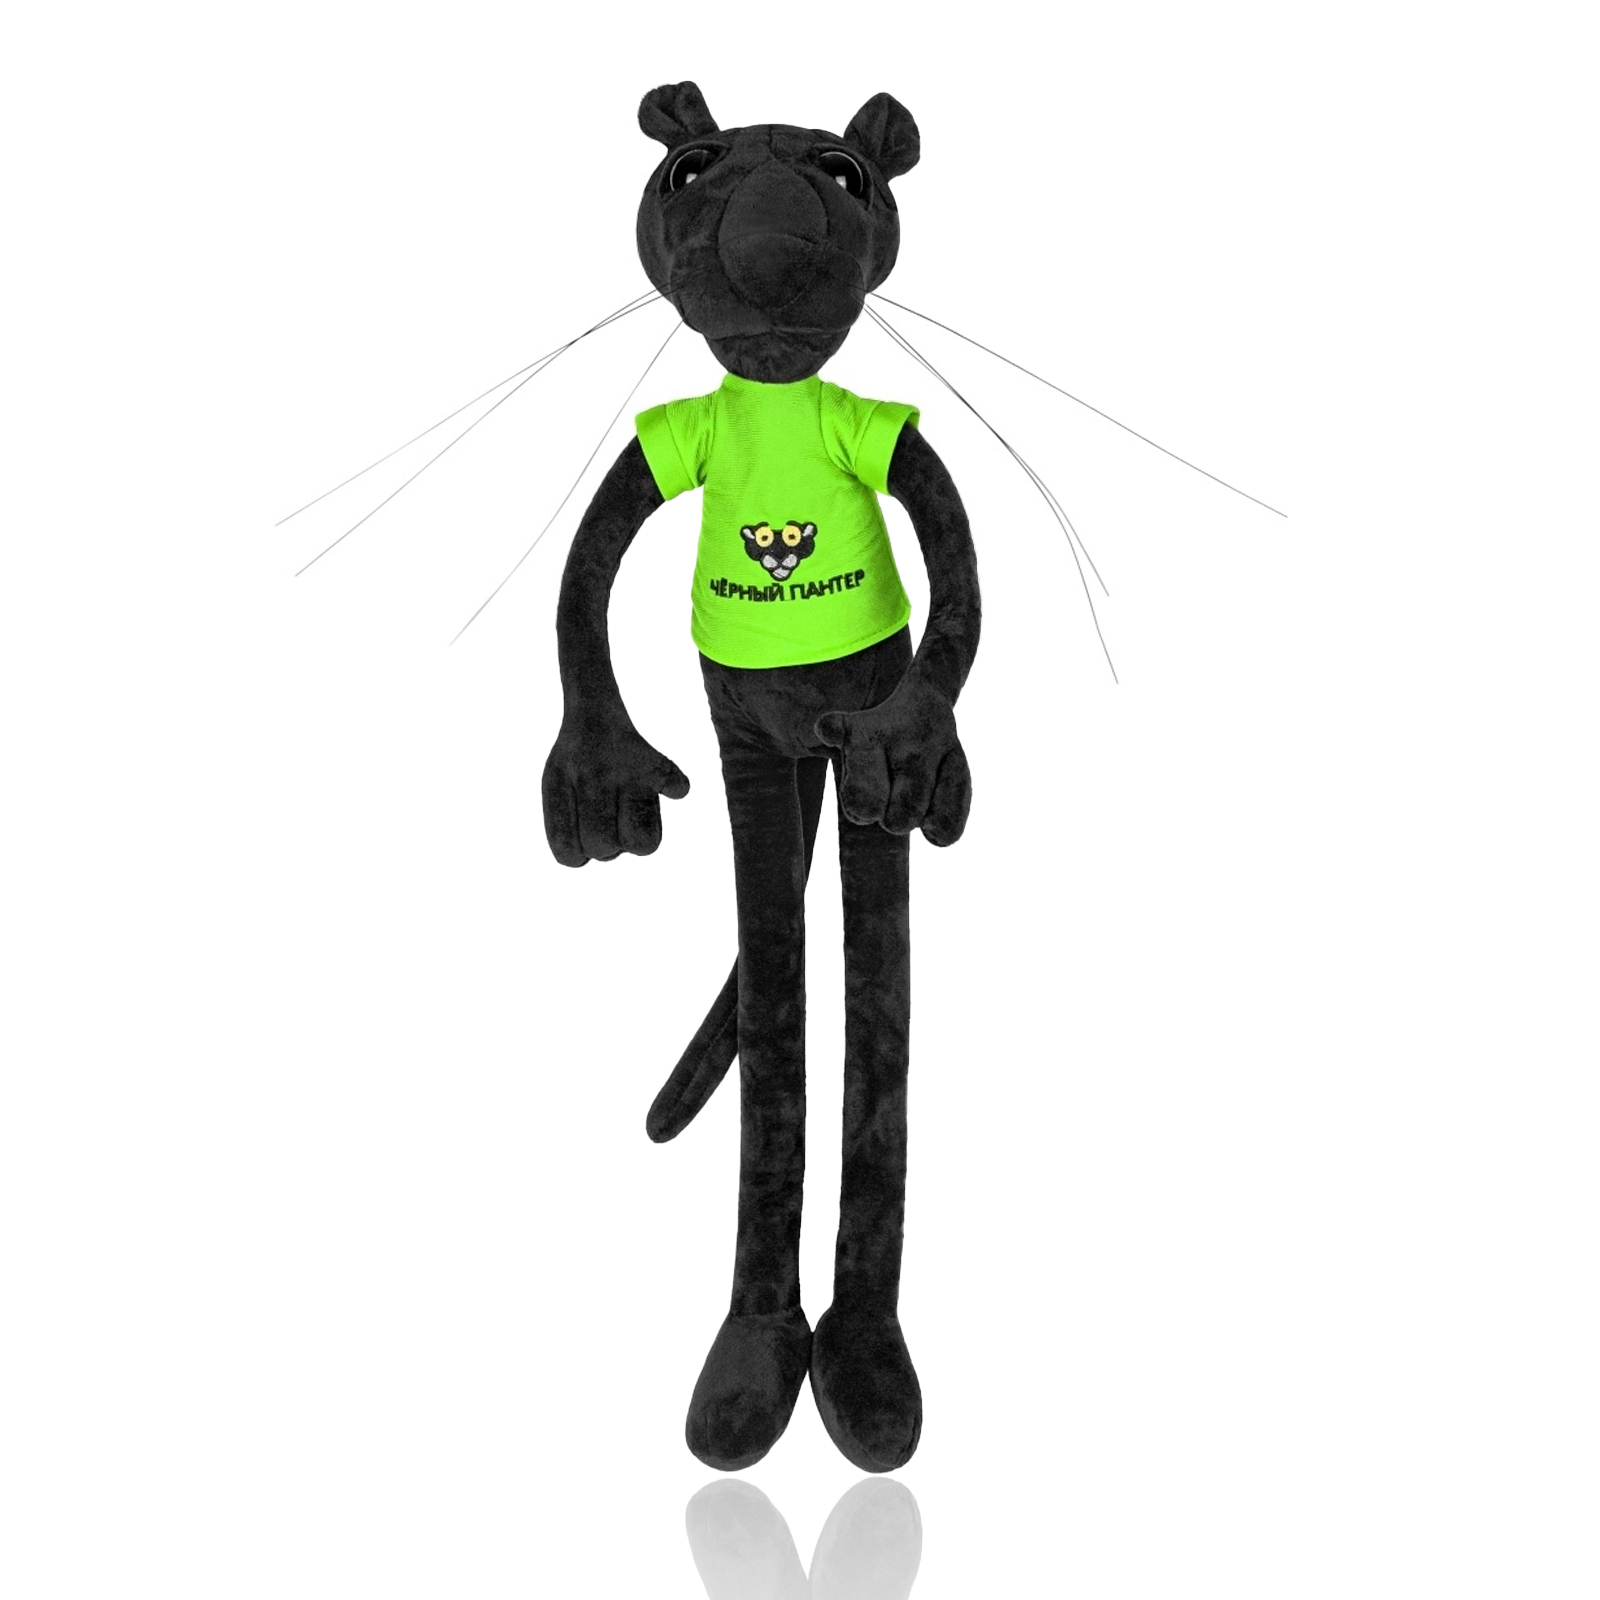 Мягкая игрушка Nano Shop Пантера черная в зеленой футболке, 100 см мягкая игрушка мэри море черная пантера 110 см